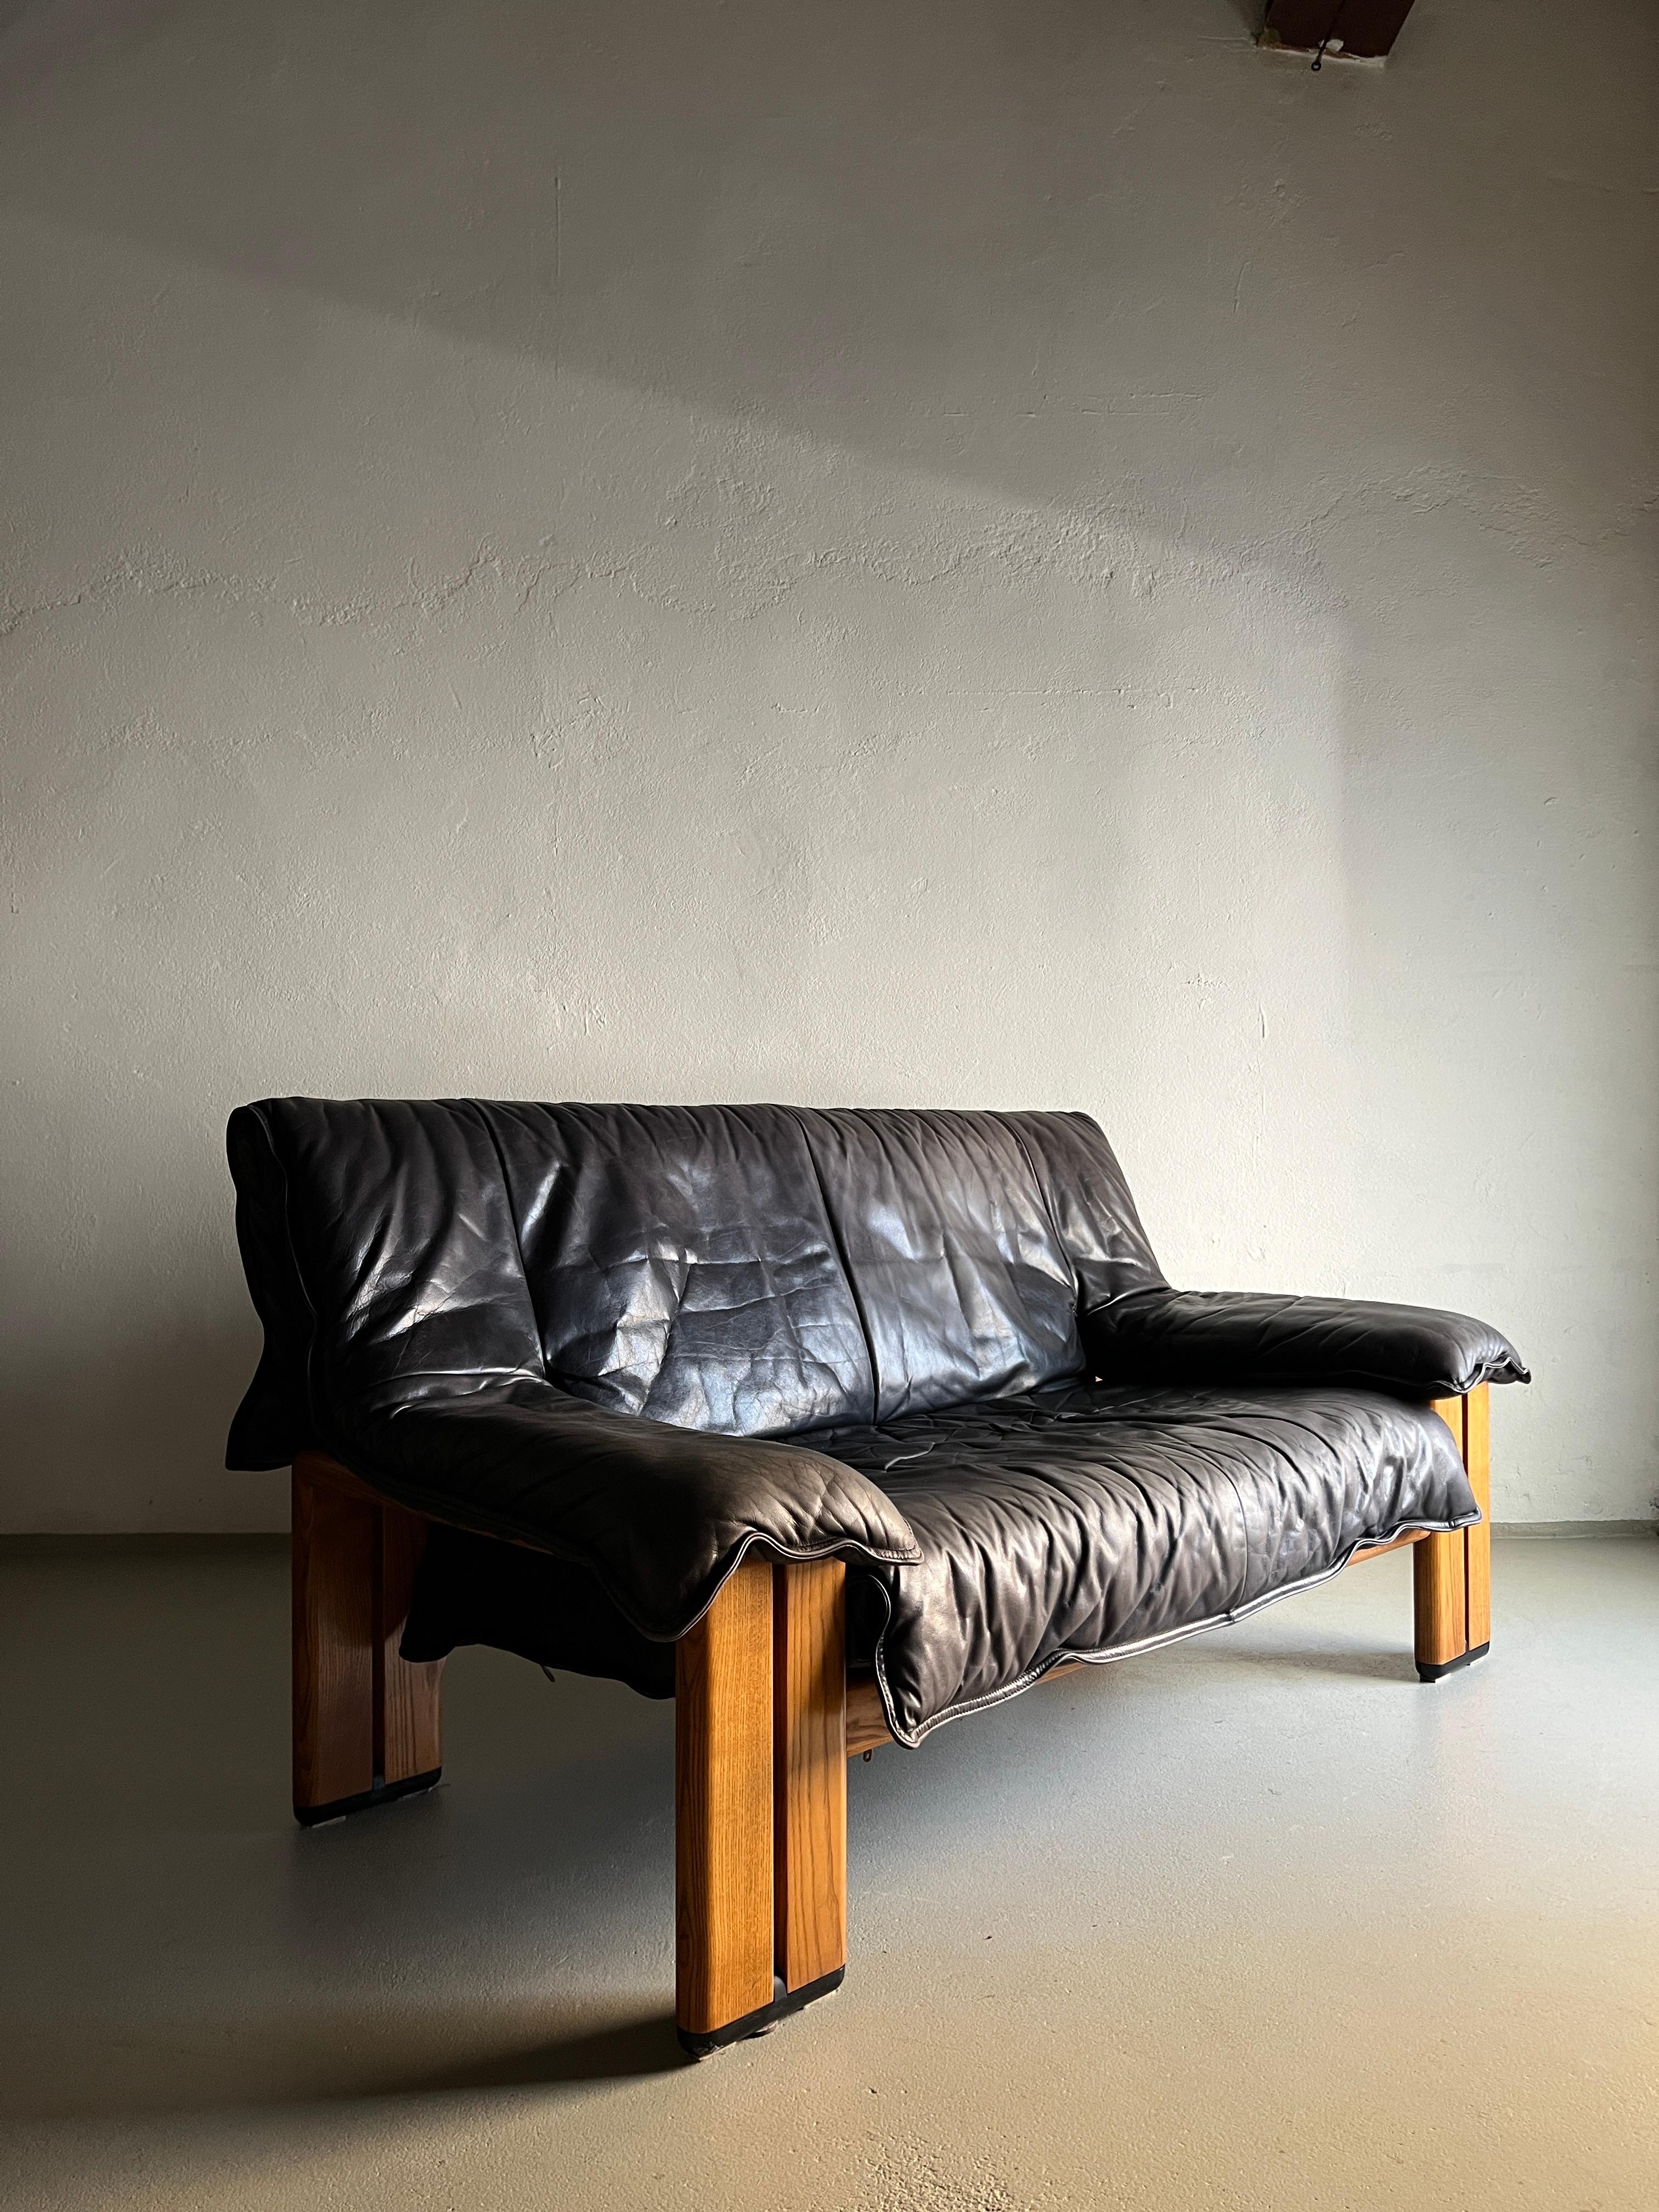 Vintage 2-Sitzer-Sofa aus hochwertigem grauem (verblasstem schwarzen) Büffelleder mit Beinen aus massivem Kiefernholz (nehme ich an). Sehr bequem.

Zusätzliche Informationen:
Produktionszeitraum: 1990s
Abmessungen: 158 B x 82 T x 80 H cm
Sitz: 38 H